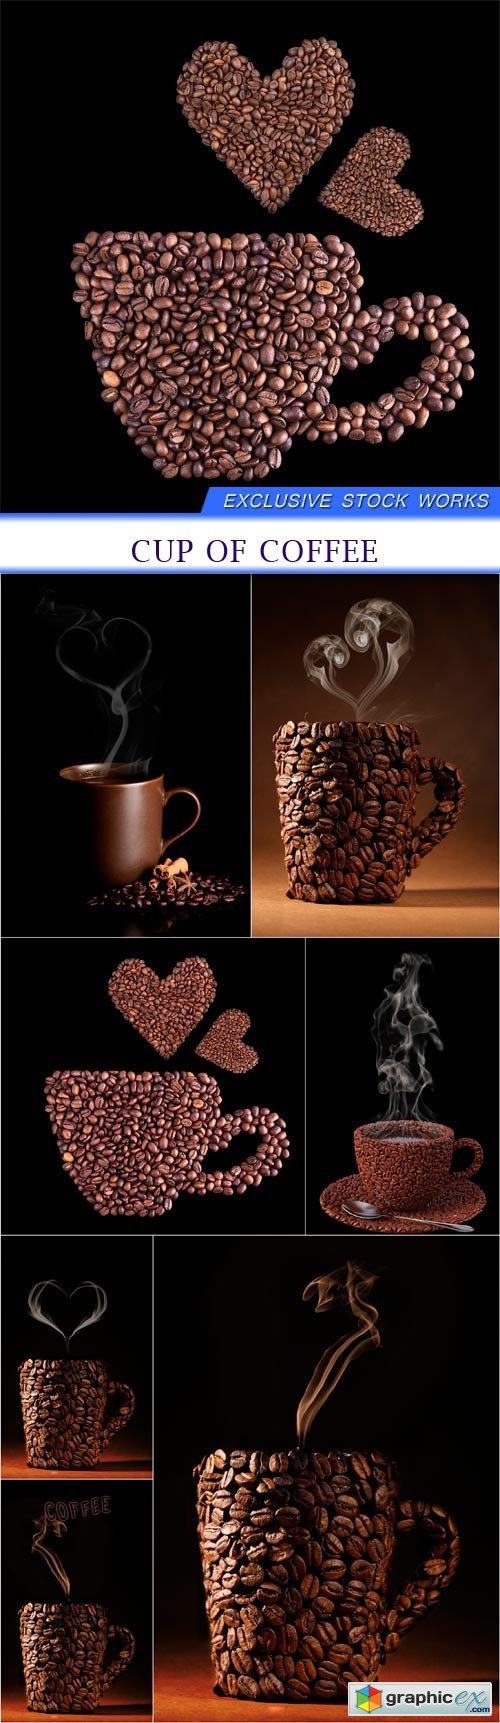 CUP OF COFFEE 7X JPEG